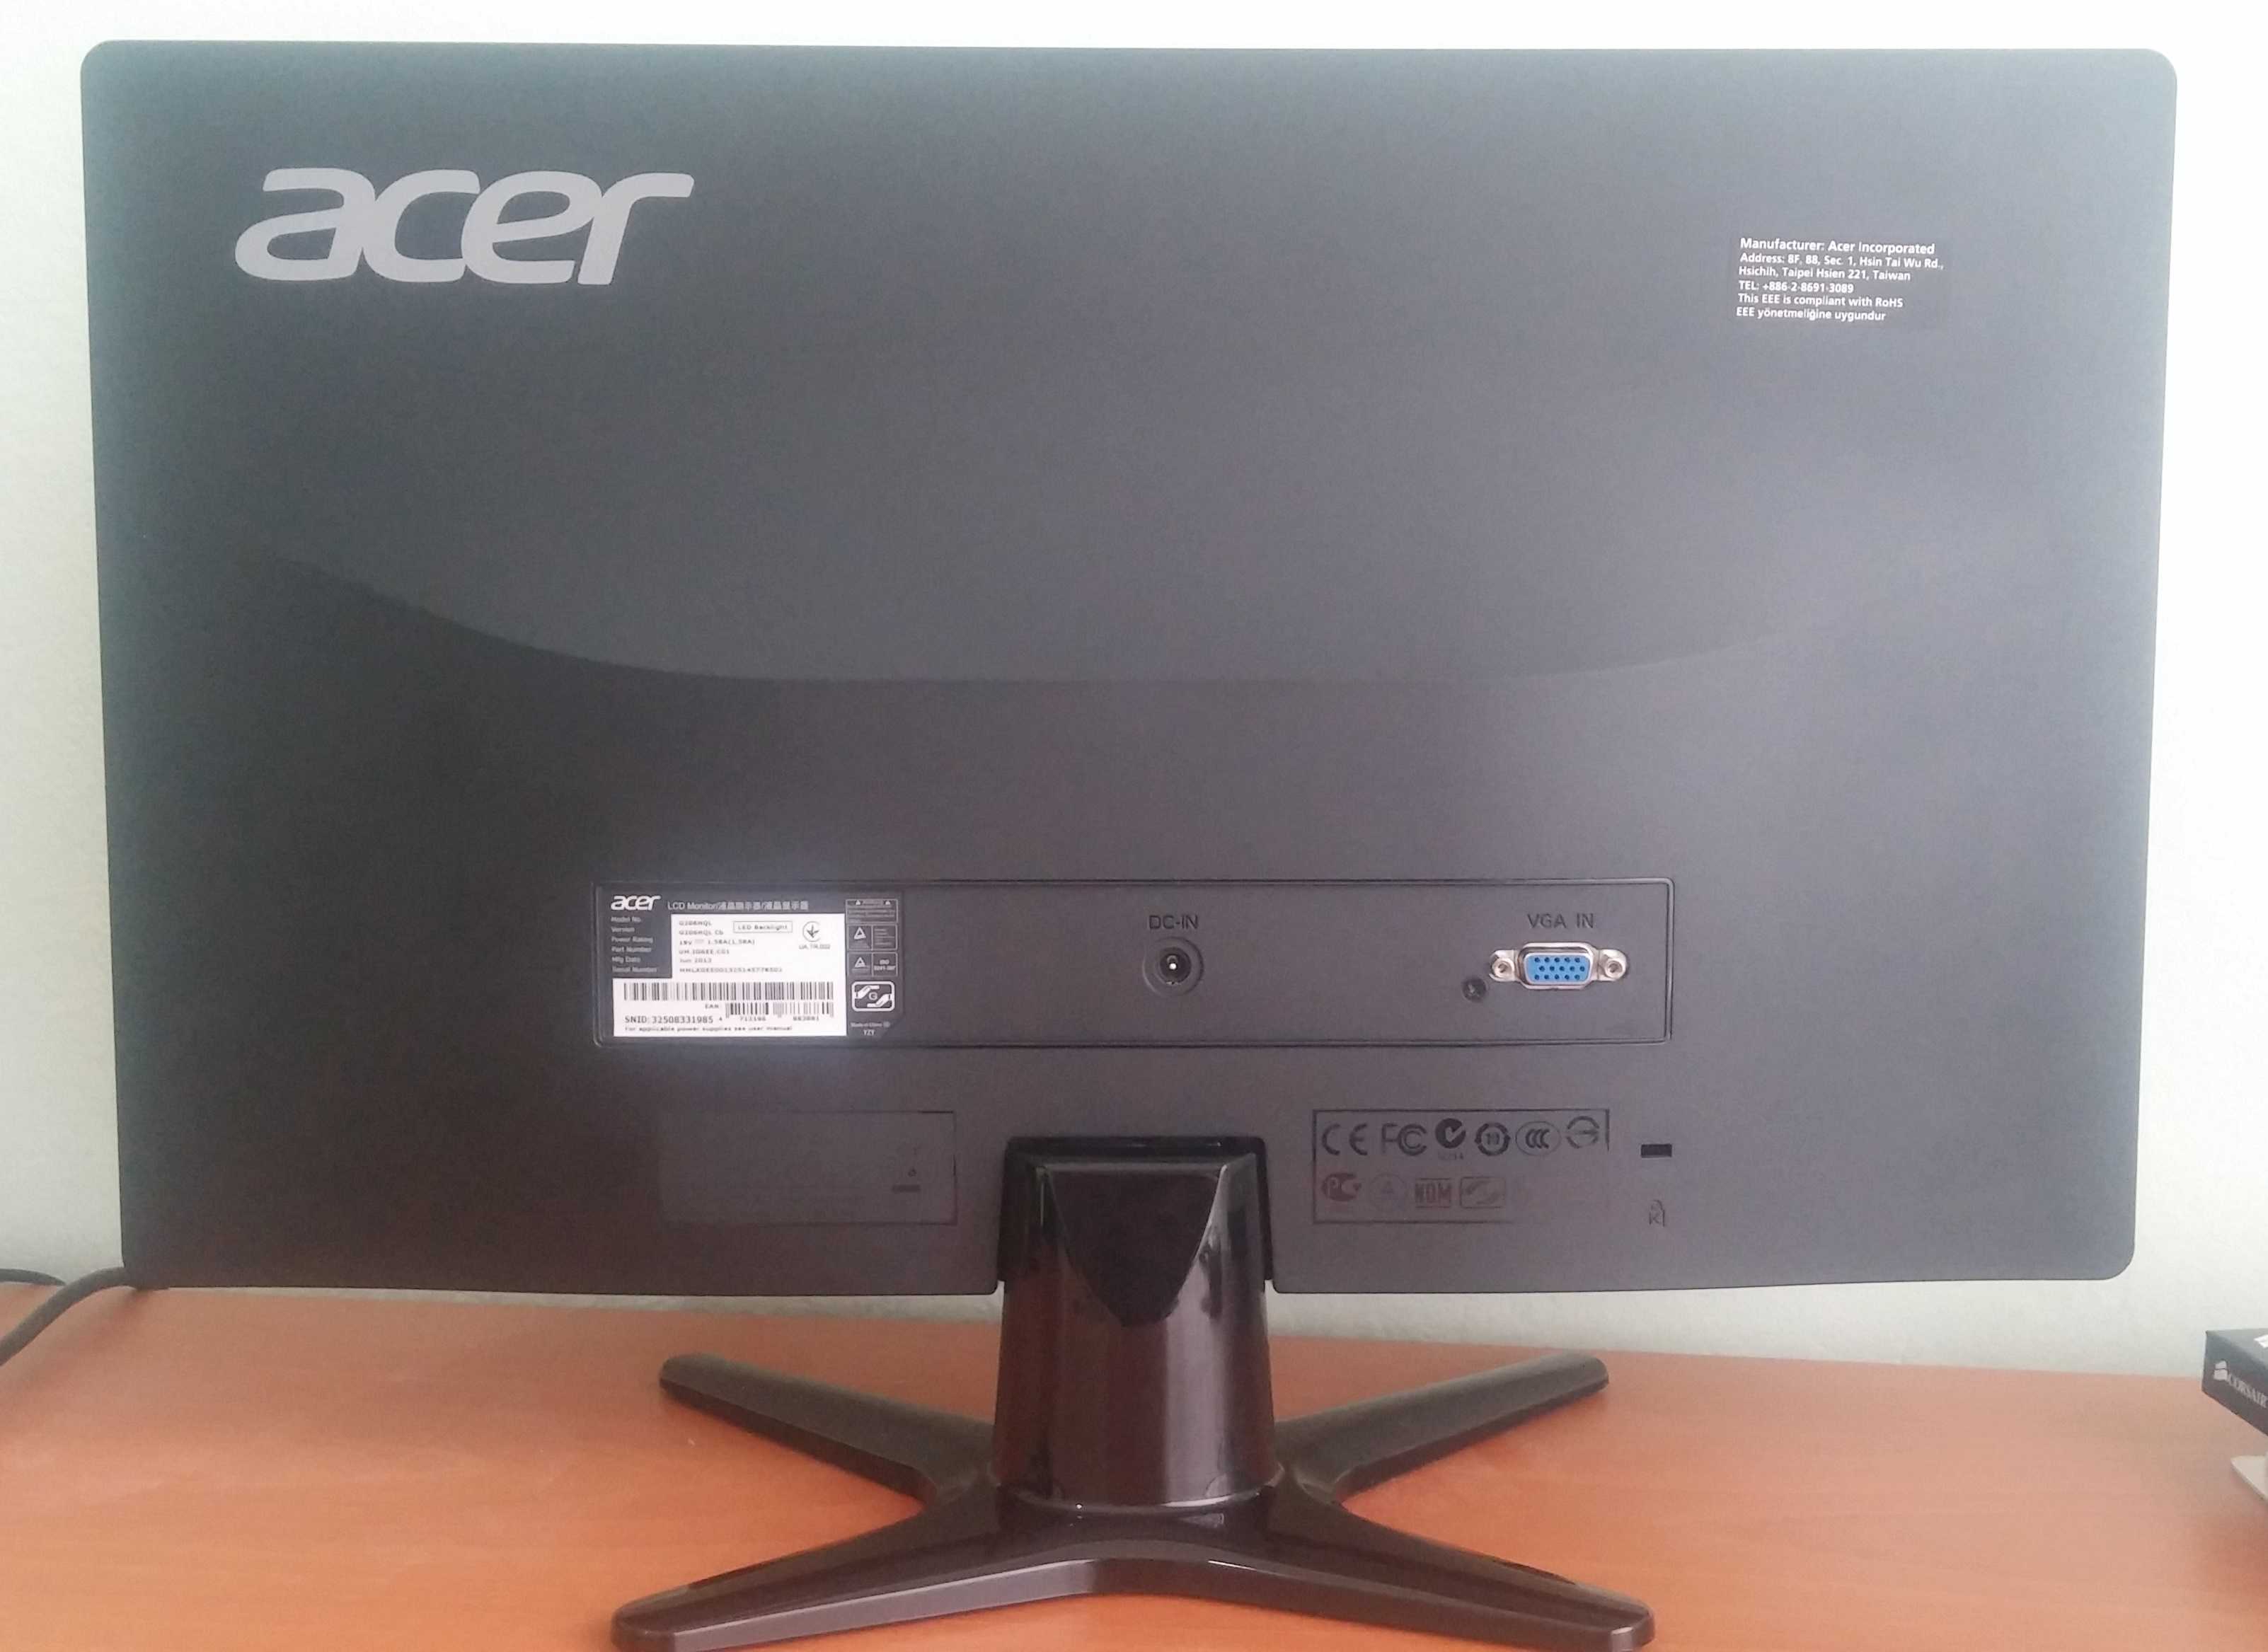 Acer g206hlbbd (черный) - купить , скидки, цена, отзывы, обзор, характеристики - мониторы